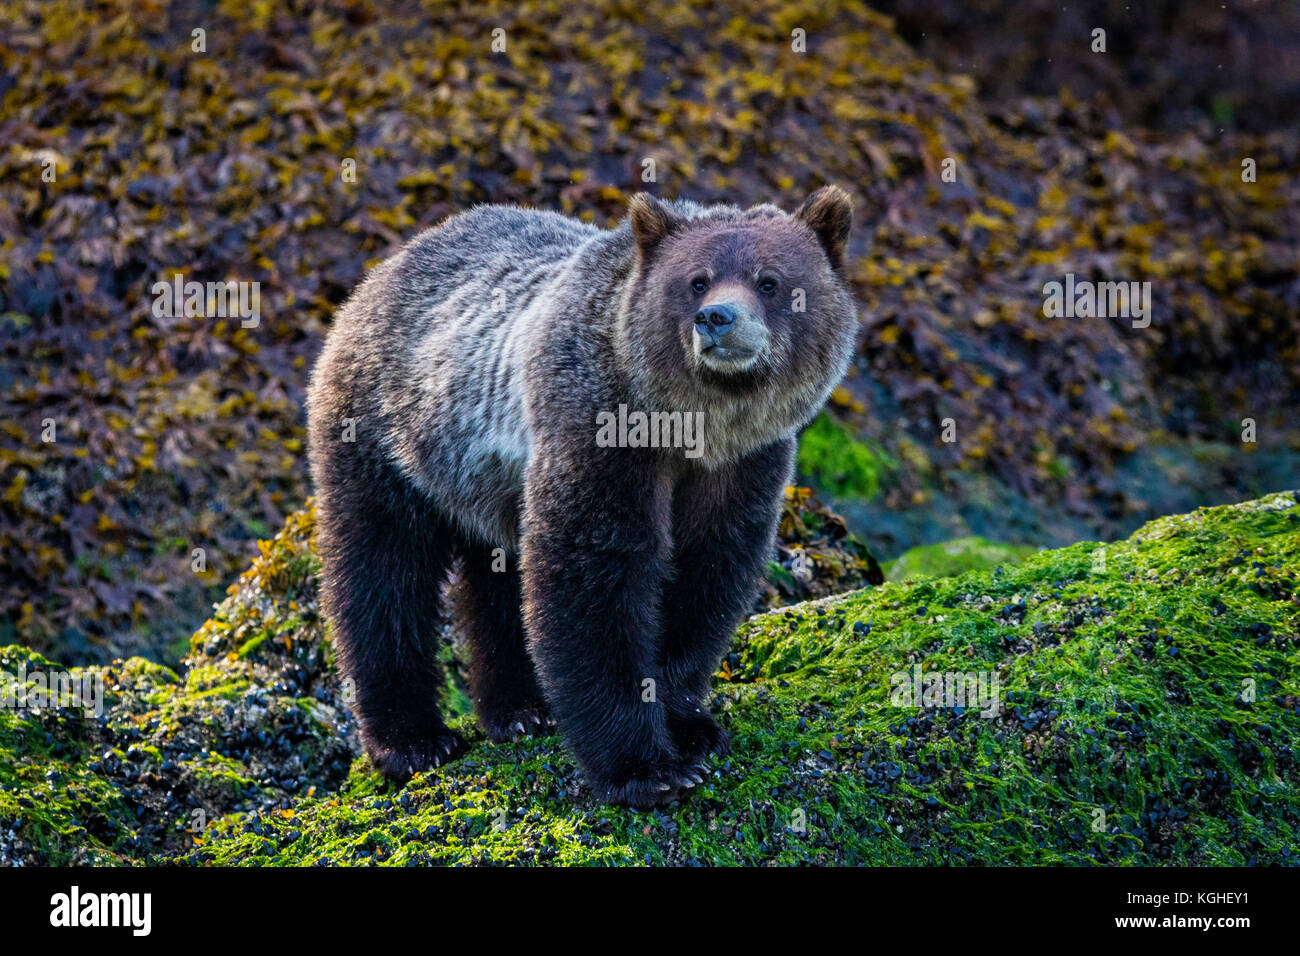 Grizzly Bear Cub rovistando lungo la bassa marea linea vicino all'acqua, grande orso nella foresta pluviale, ingresso del cavaliere, British Columbia, Canada. Foto Stock